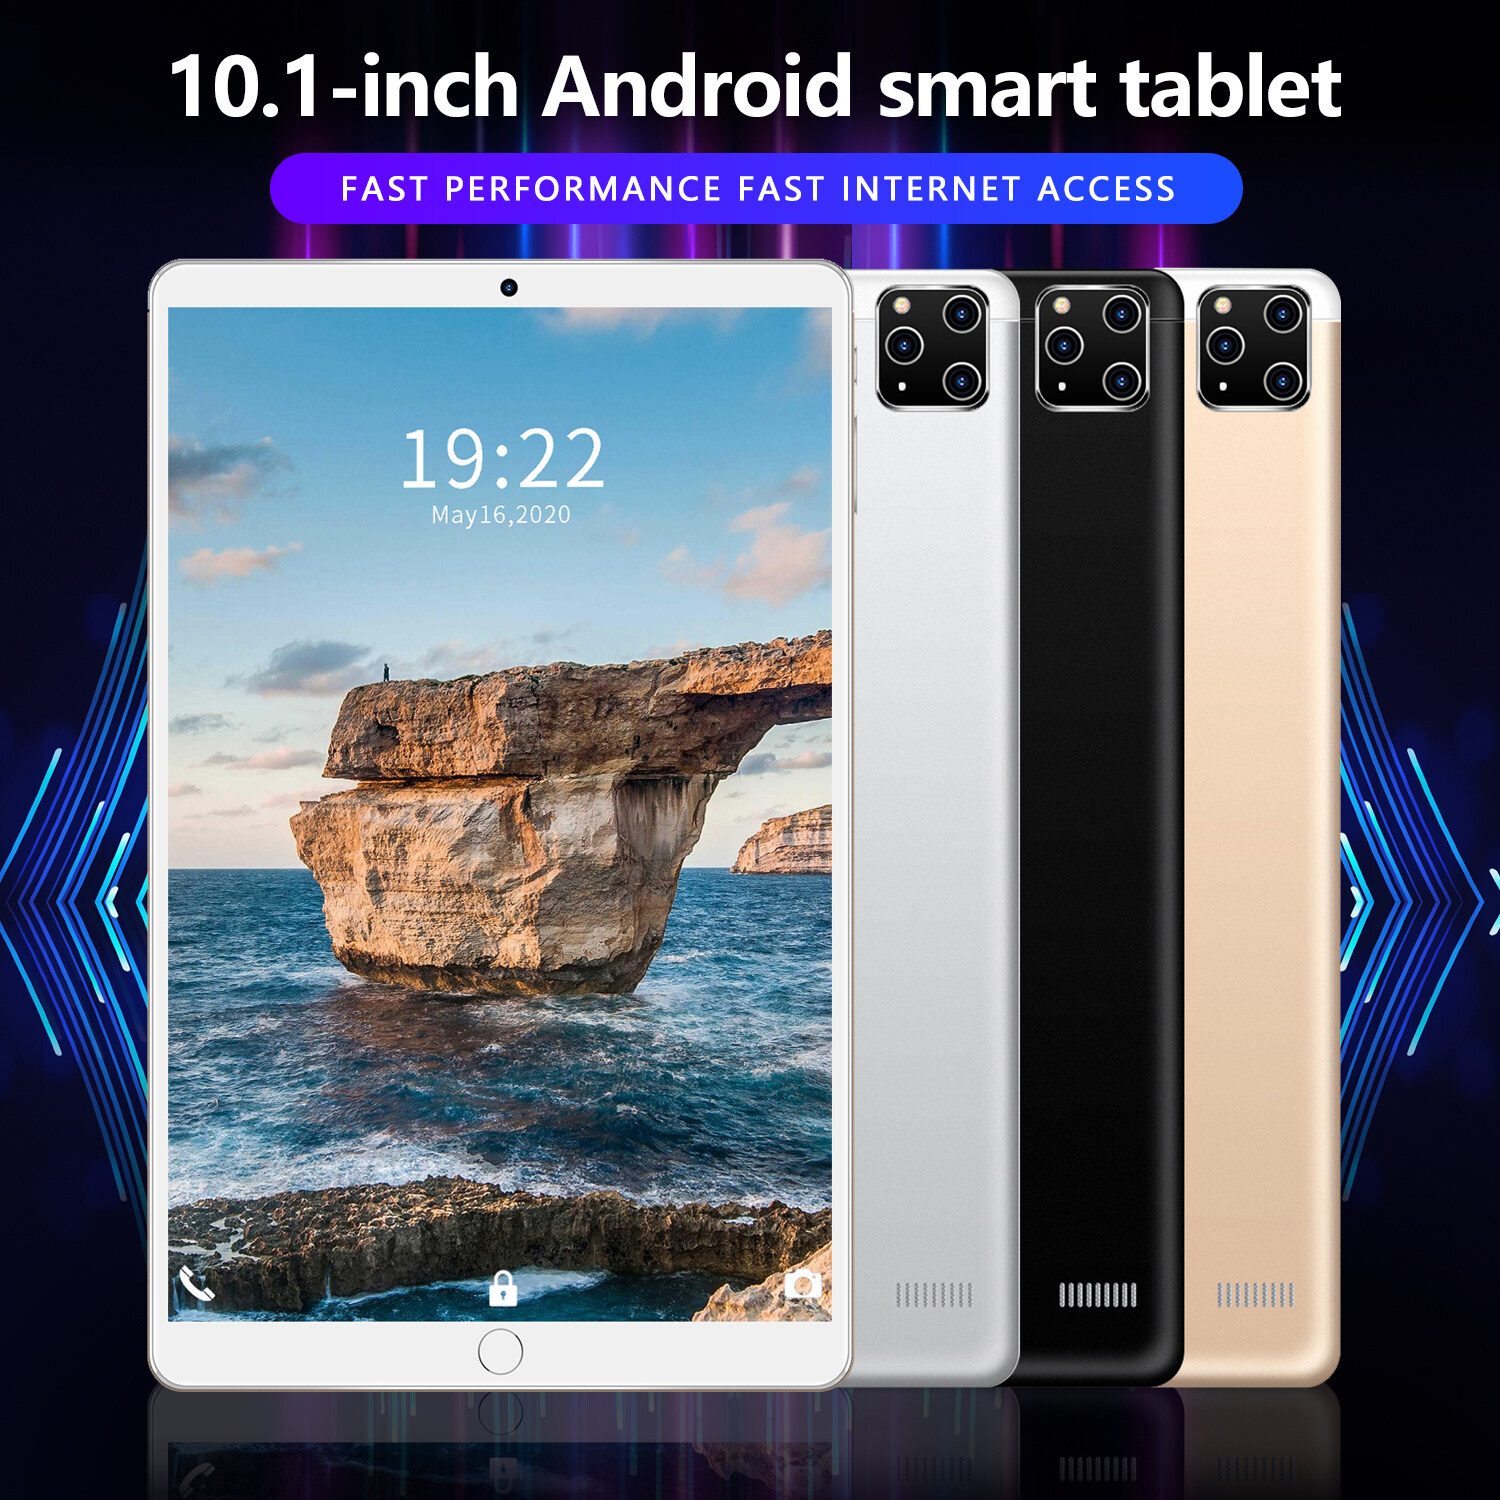 มุมมองเพิ่มเติมของสินค้า 2022 ใหม่ แท็บเล็ต new Tablet pc RAM8G ROM512G 10.1 นิ้ว โทรได้ Full HD แท็บเล็ตถูกๆ แท็บเล็ตราคาถูก Andorid 10.0 จัดส่งฟรี รองรับภาษาไทย หน่วยประมวลผล 10-core แท็บเล็ตโทรได้ 4g/5G แท็บเล็ตสำหรับเล่นเกมราคาถูก แท็บเล็ตราคาถูกๆ แท็บเล็ตราคาถูกรุ่นล่าสุด